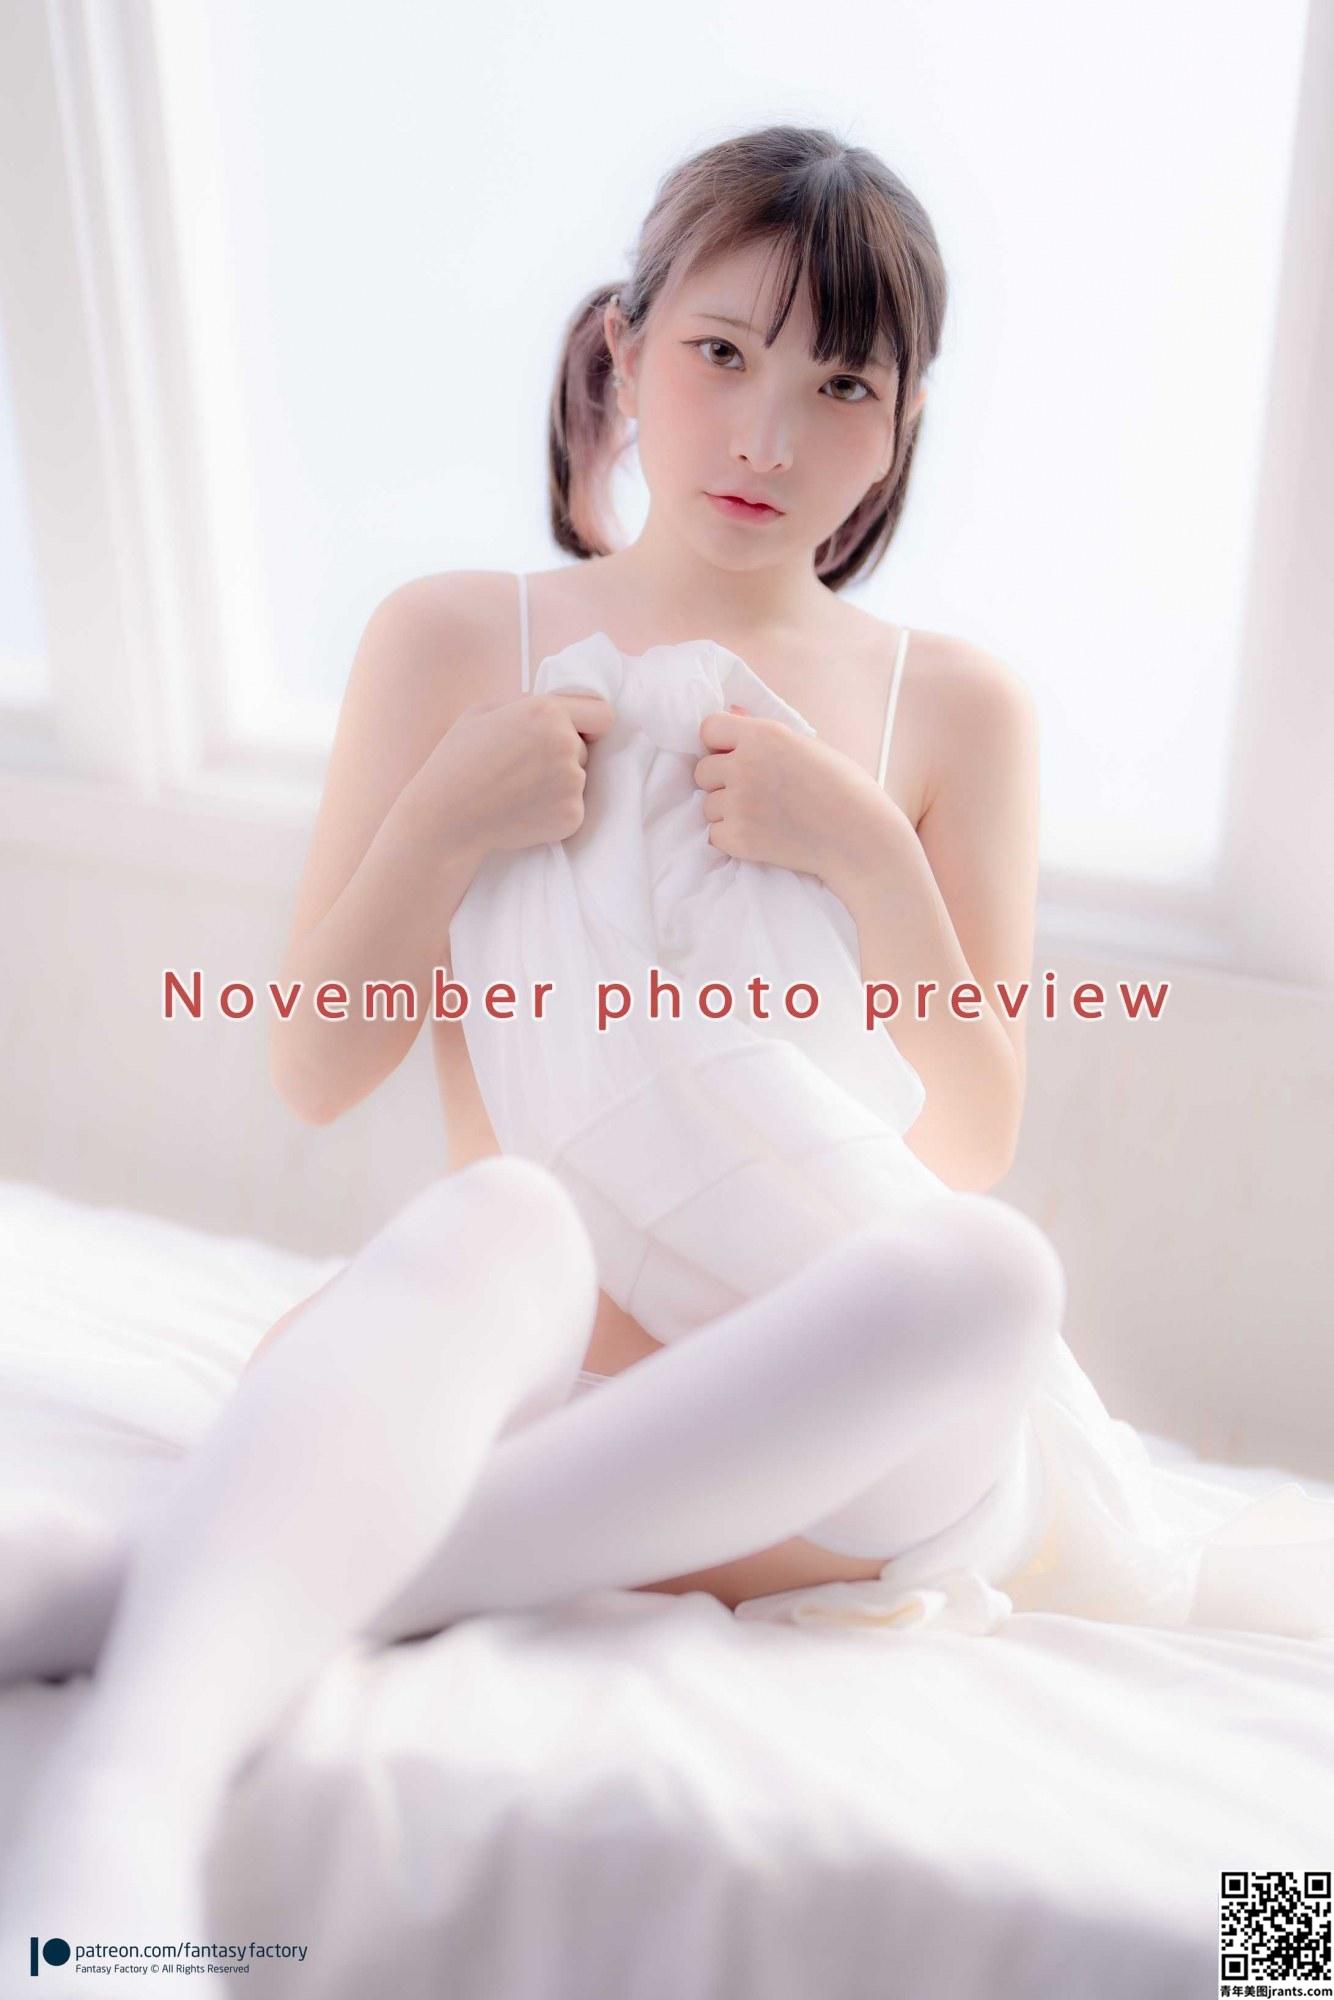 小丁 November photo preview